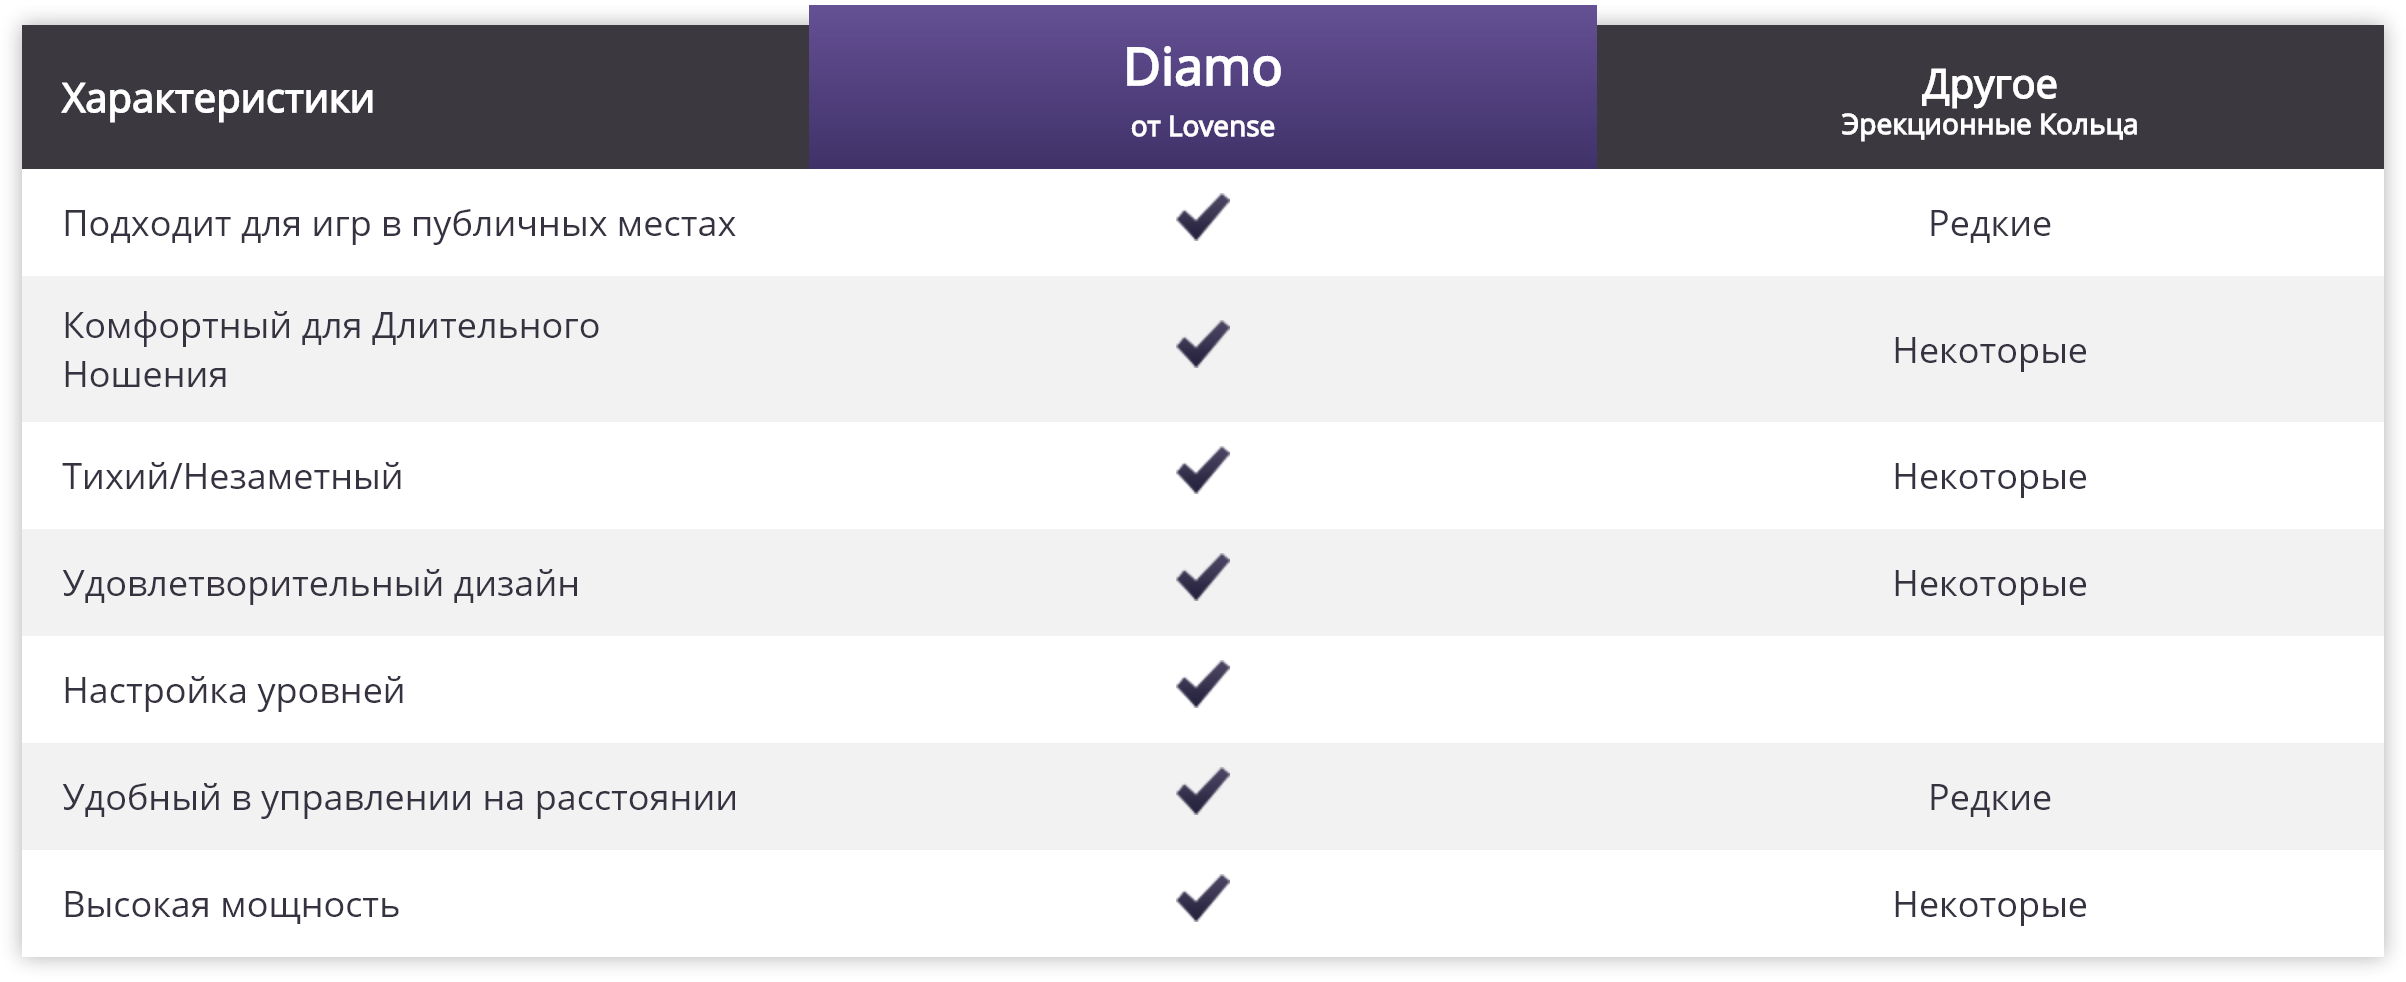 Сравнение Diamo с аналогами